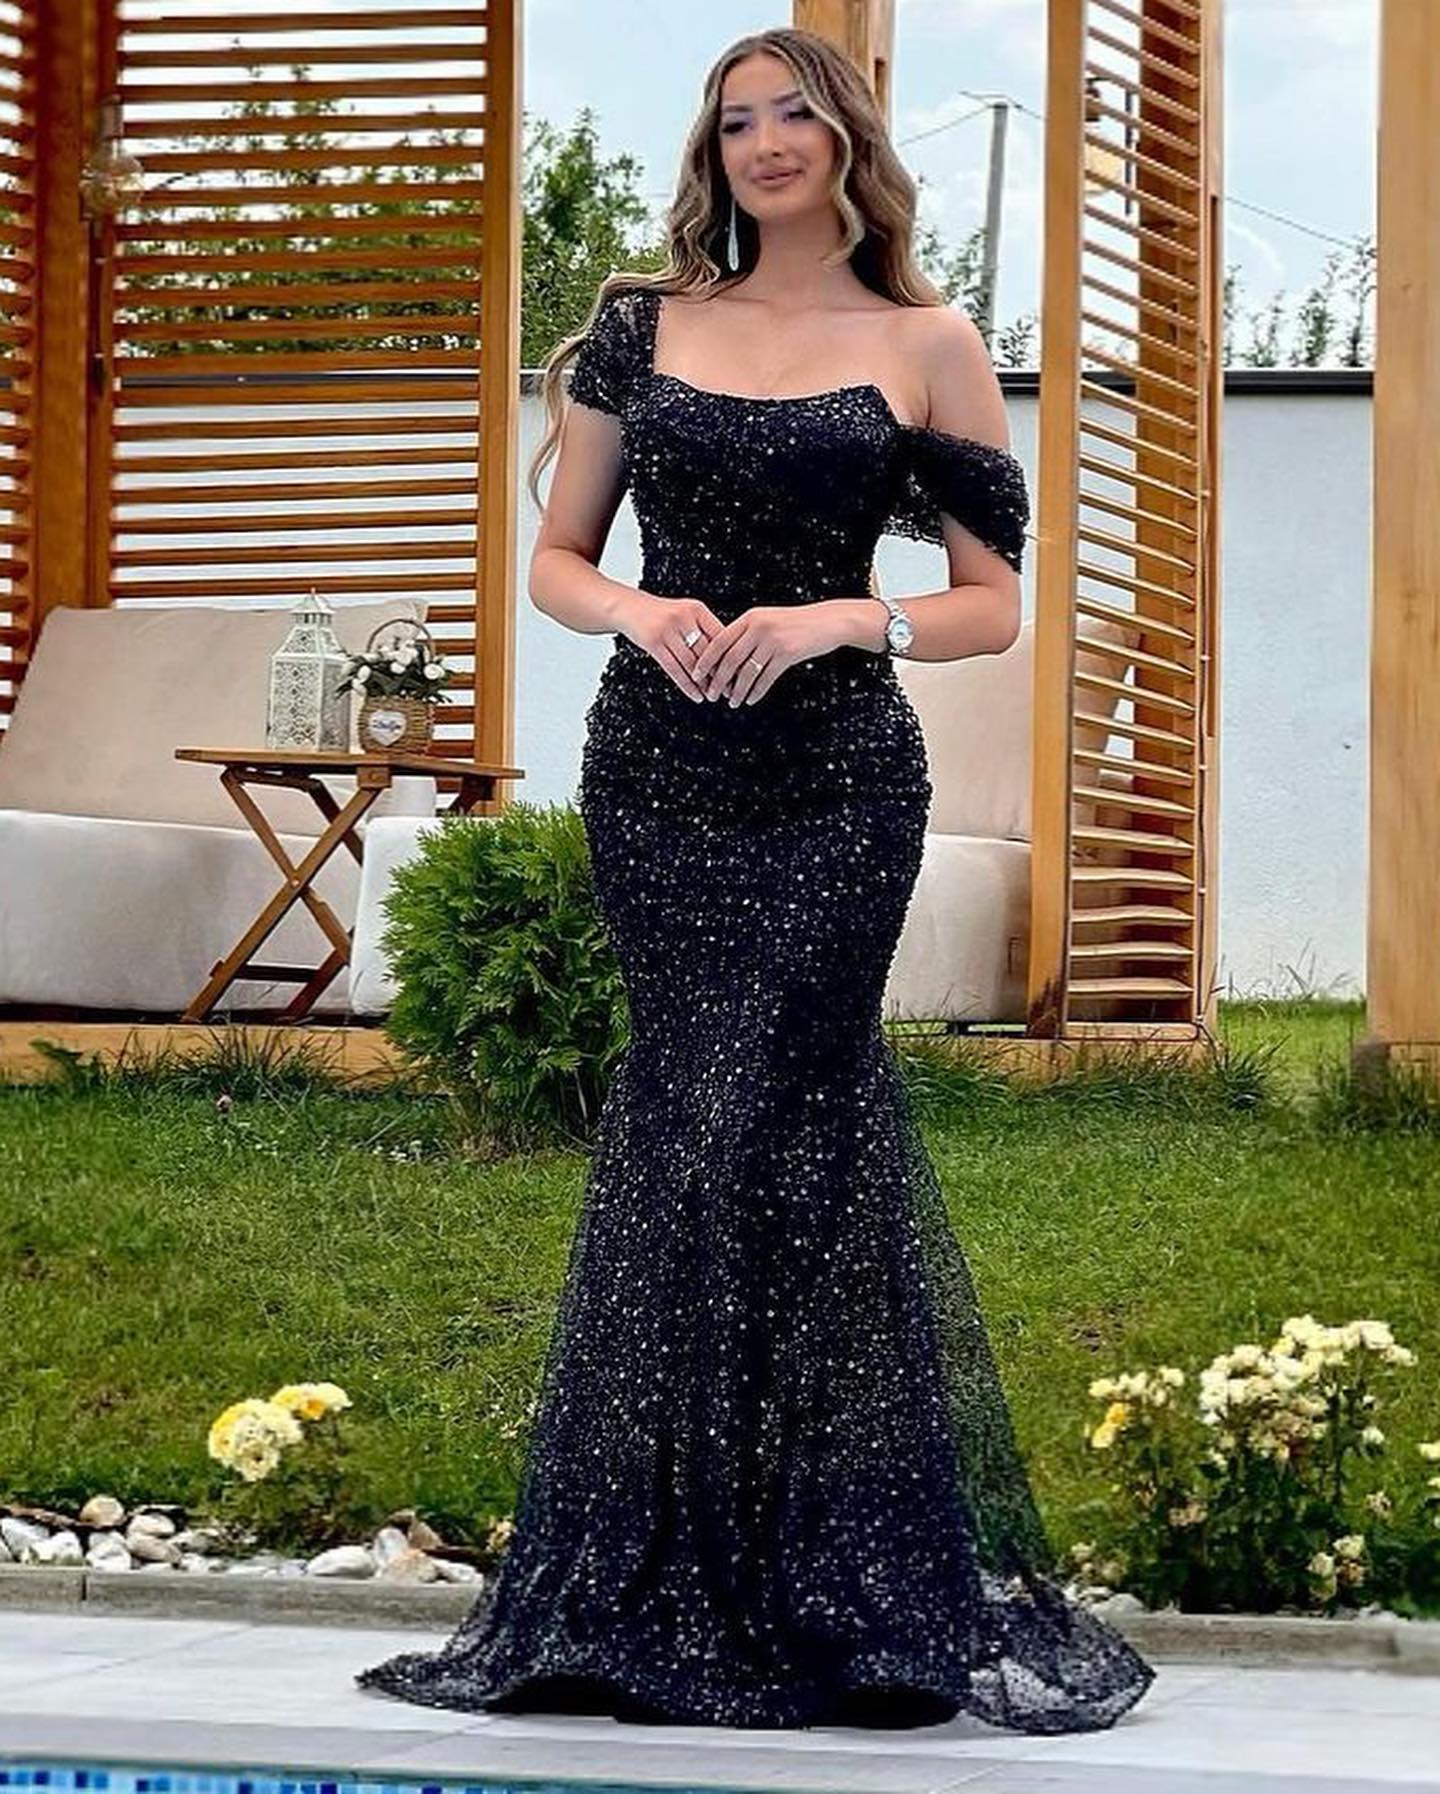 Schwarze Abendkleider im Meerjungfrau-Stil, trägerlos, mit Pailletten, schulterfrei, bodenlang, formelle Kleidung für besondere Anlässe